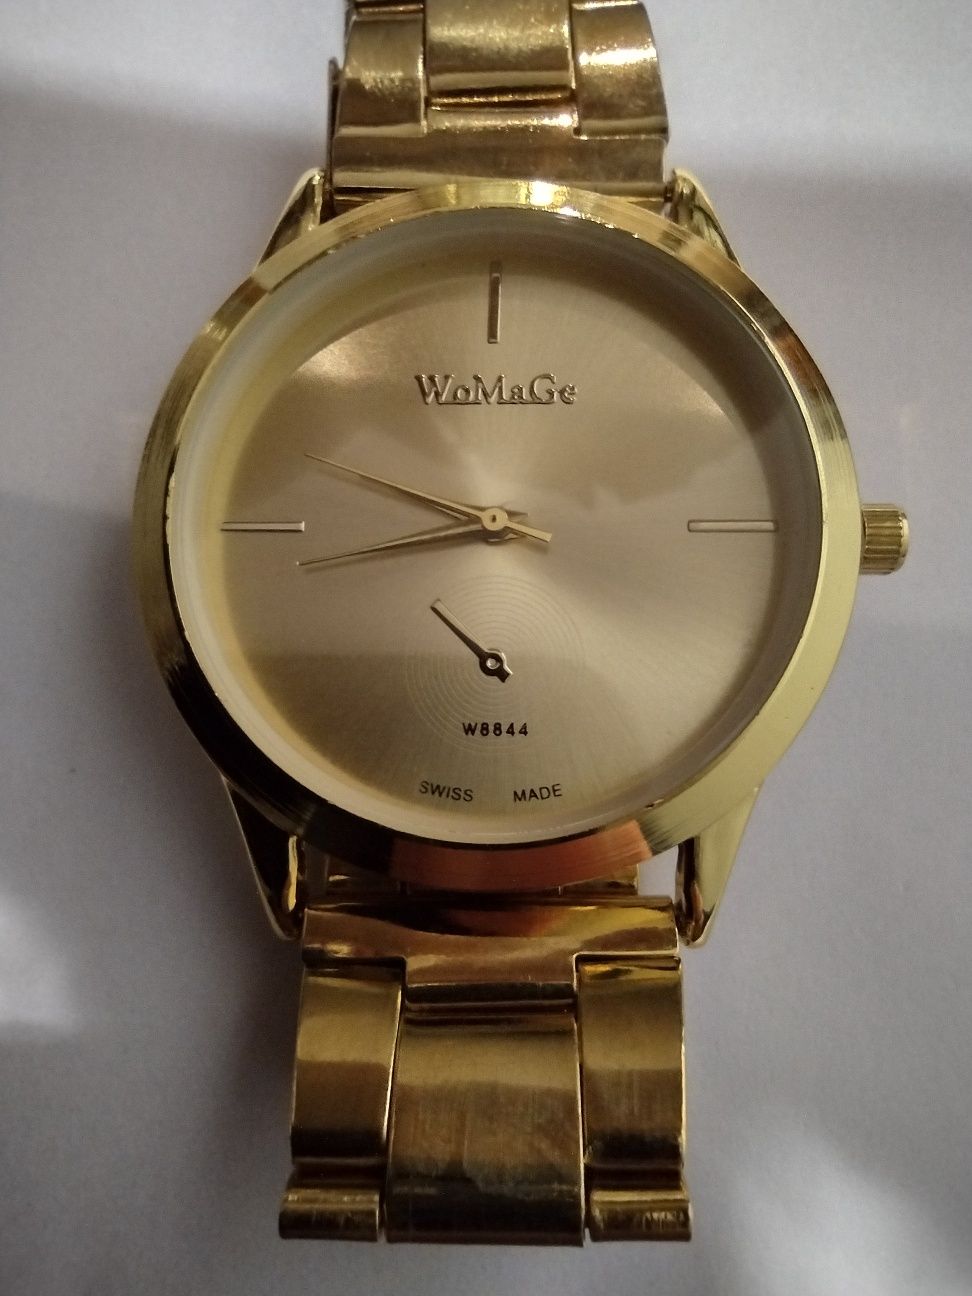 Zegarek damski imitacja złota